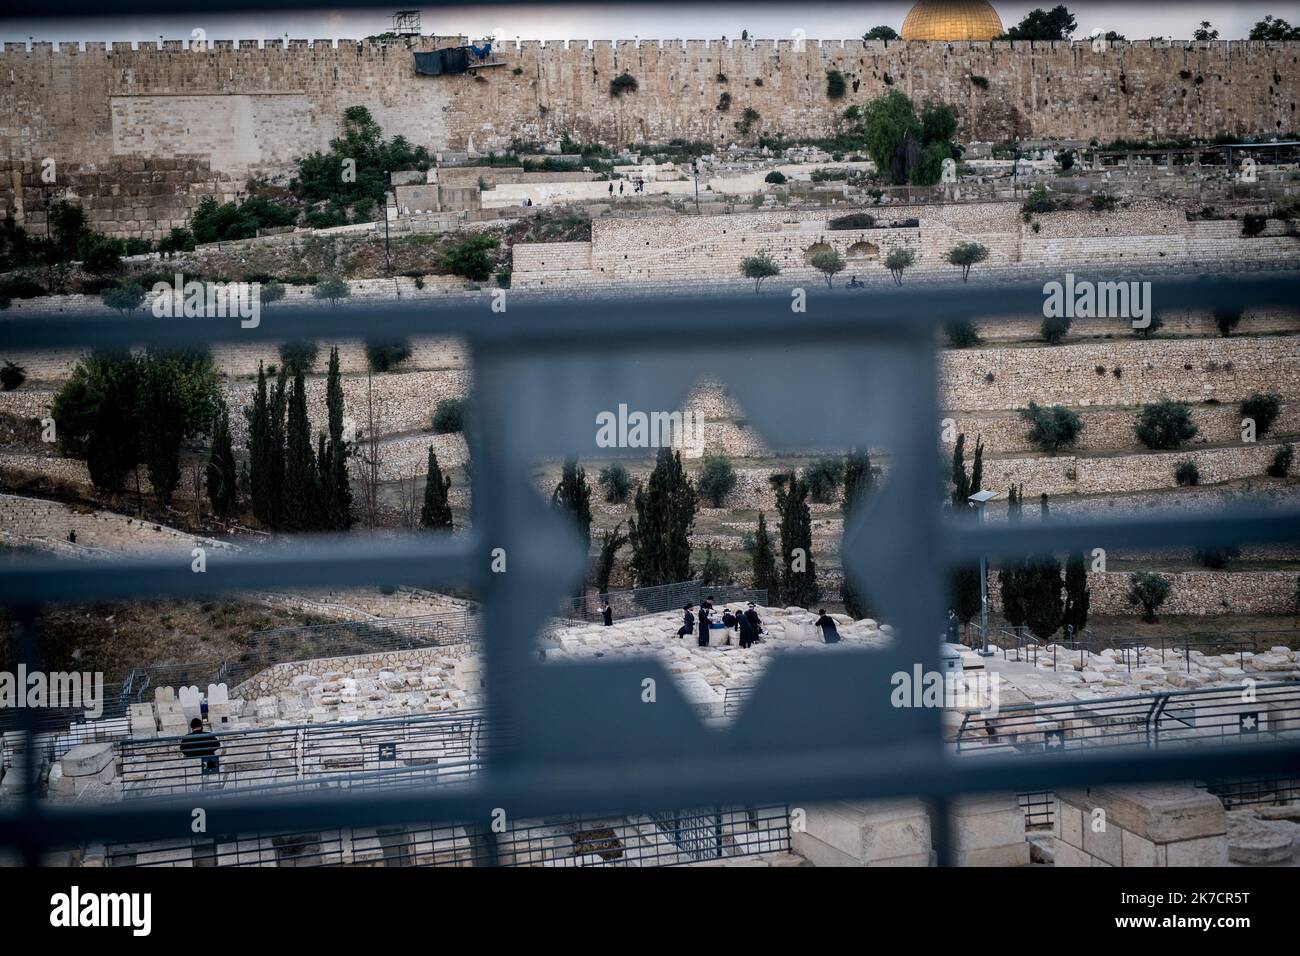 ©Michael Bunel / Le Pictorium/MAXPPP - Michael Bunel / Le Pictorium - 09/05/2018 - Israel / Jerusalem / Jerusalem - Vue sur la mosquee al-Aqsa (Al-aksa) et le Dome du rocher ainsi que sur le cimetierre Juif depuis le mont des Oliviers. 9 mai 2018. Jerusalem. Israel. Palestine. / 09/05/2018 - Israel / Jerusalem / Jerusalem - View of al-Aqsa Mosque (Al-aksa) and the Dome of the Rock from the Mount of Olives. May 9, 2018. Jerusalem. Israel. Palestine. Stock Photo